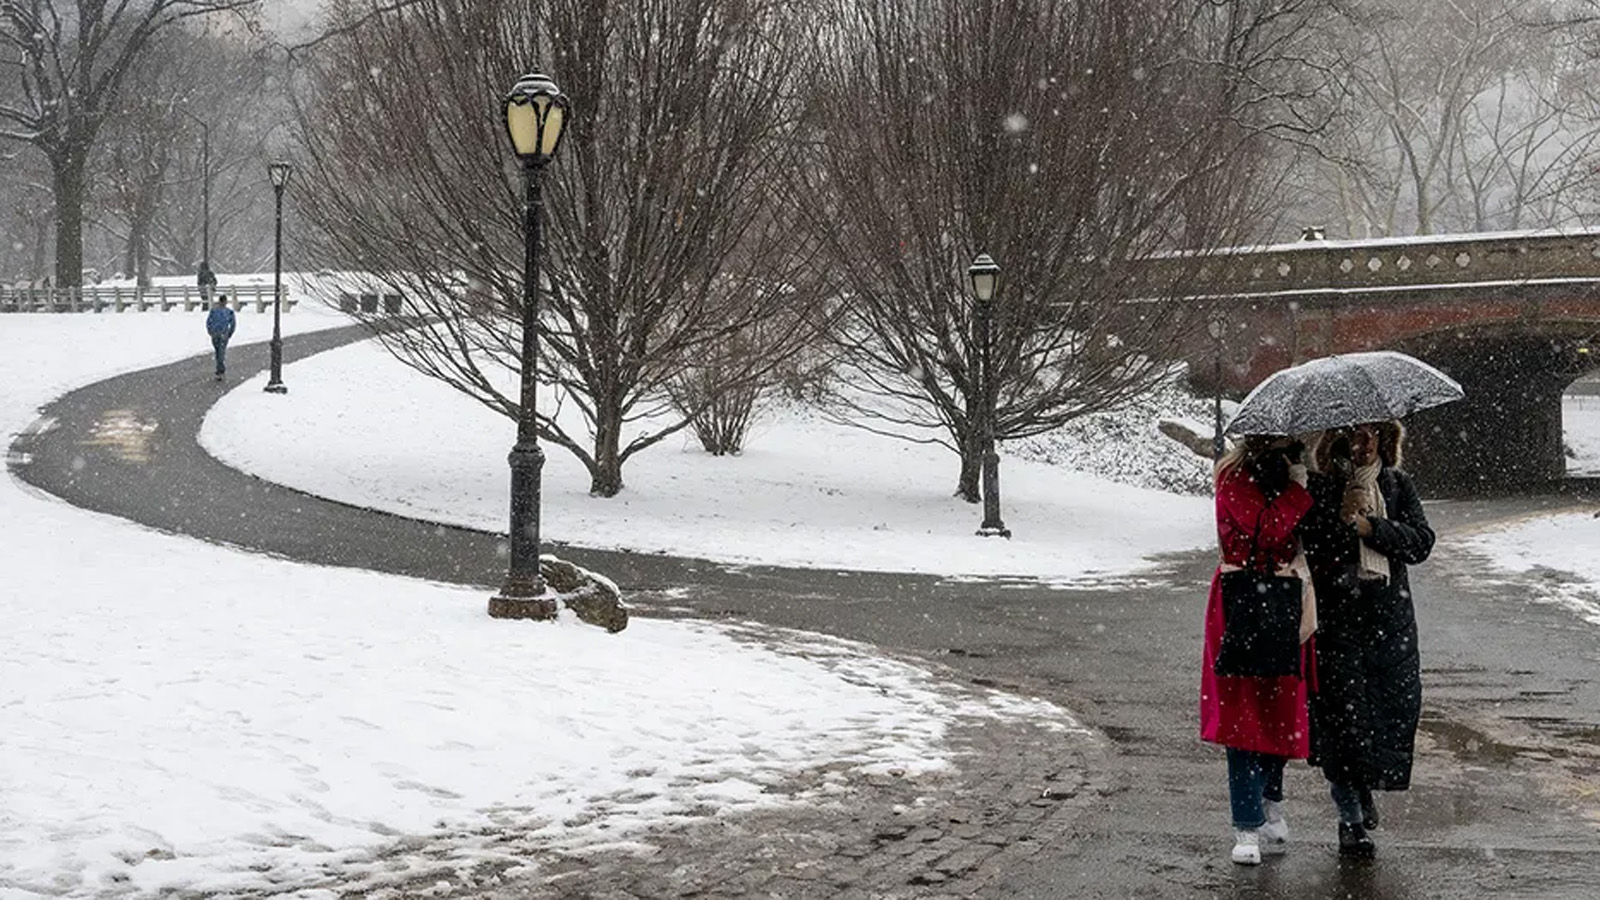 أشخاص يسيرون في سنترال بارك في نيويورك مع تساقط الثلوج خلال عاصفة شتوية في 19 مانون الثاني (يناير) 2024.